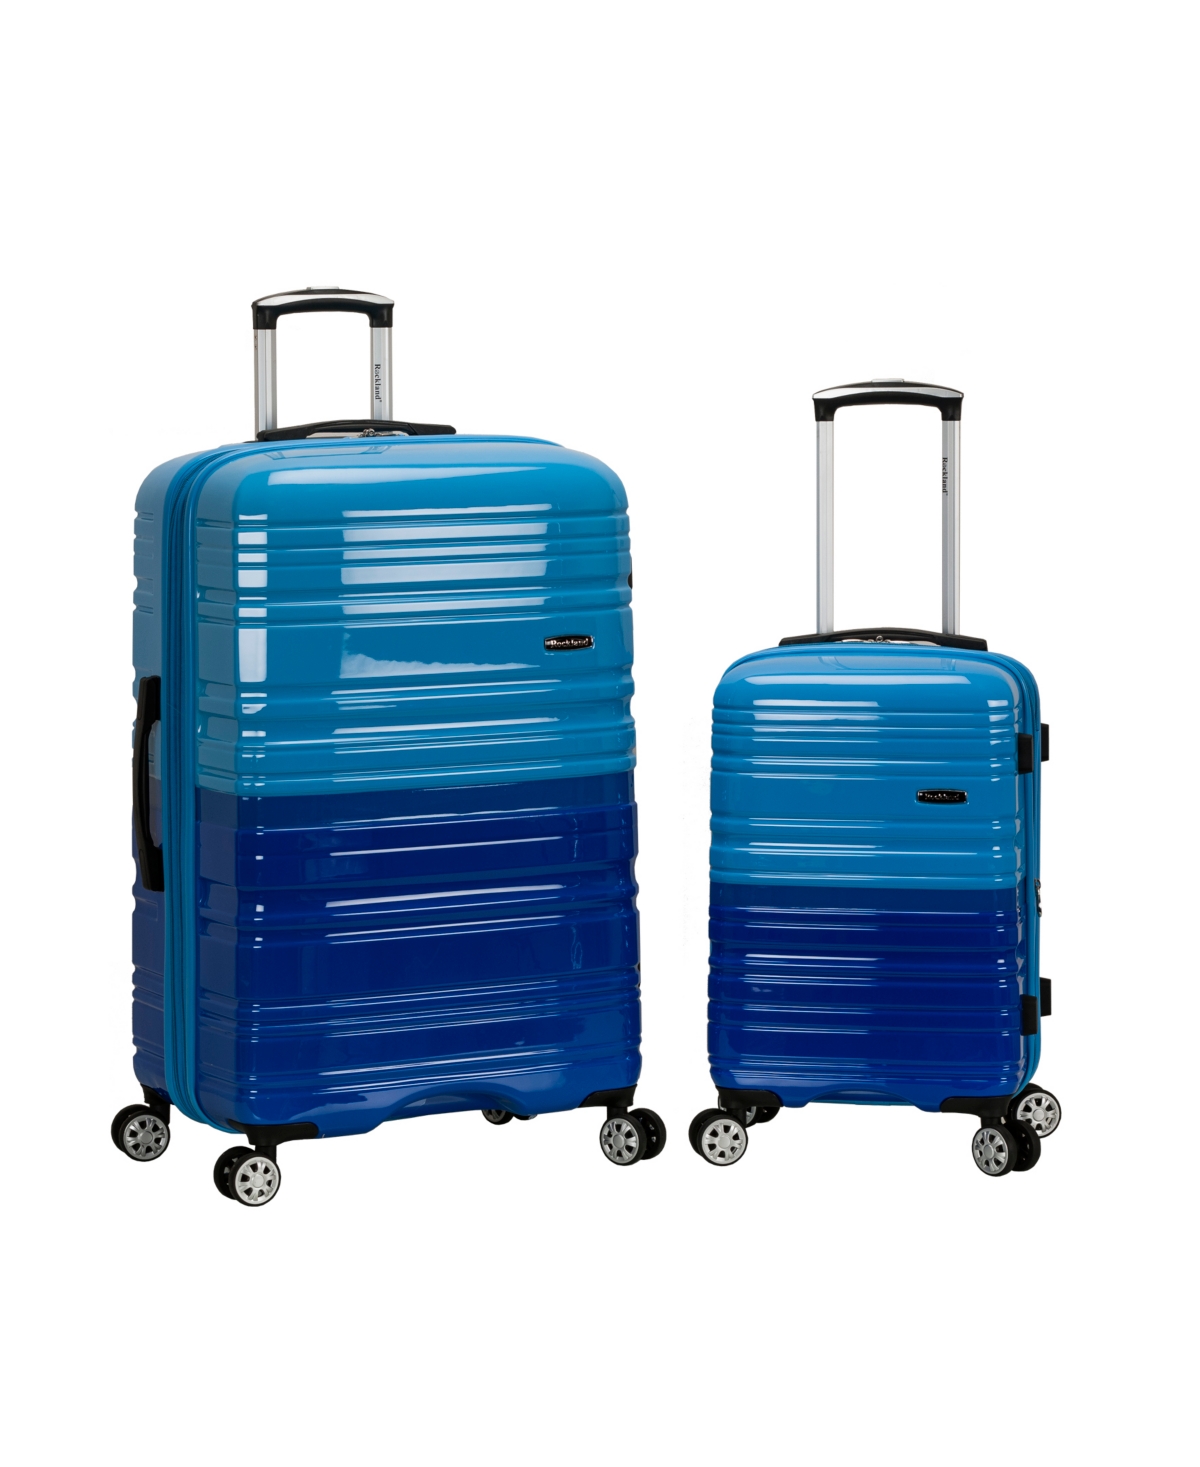 2-Pc. Hardside Luggage Set - Pink